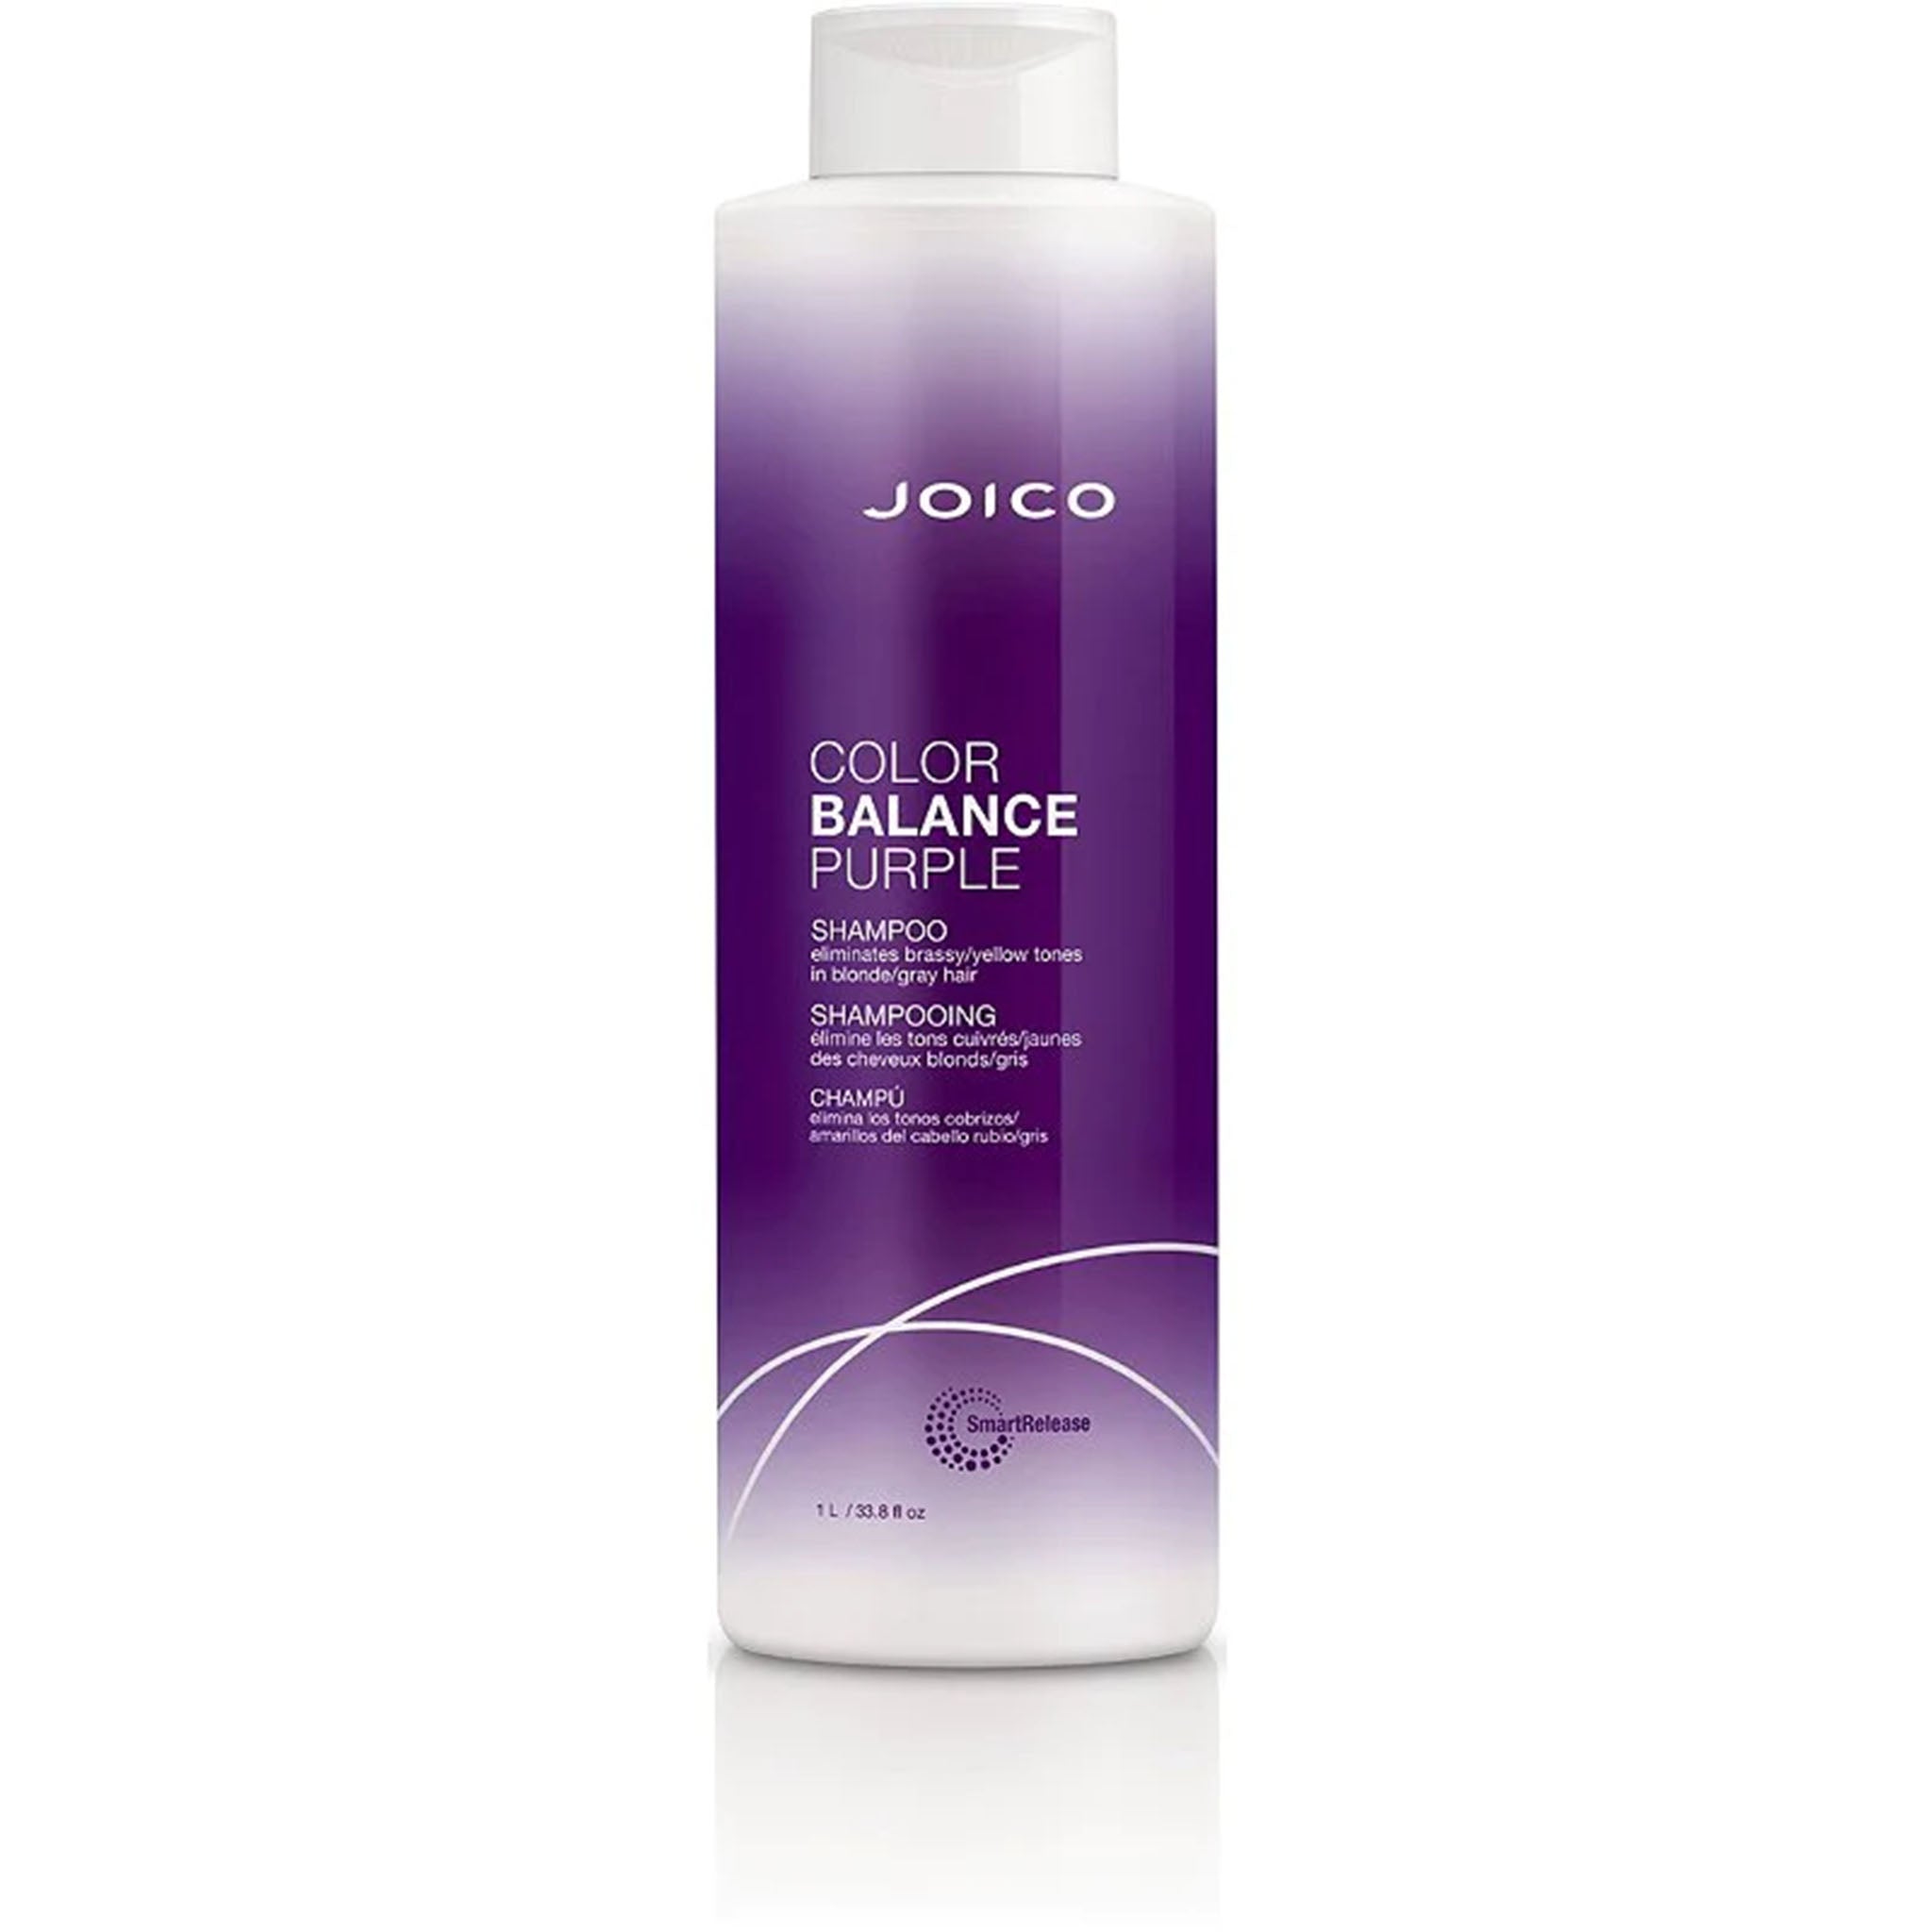 Joico. Shampoing Color Balance Purple - 1000 ml - Concept C. Shop